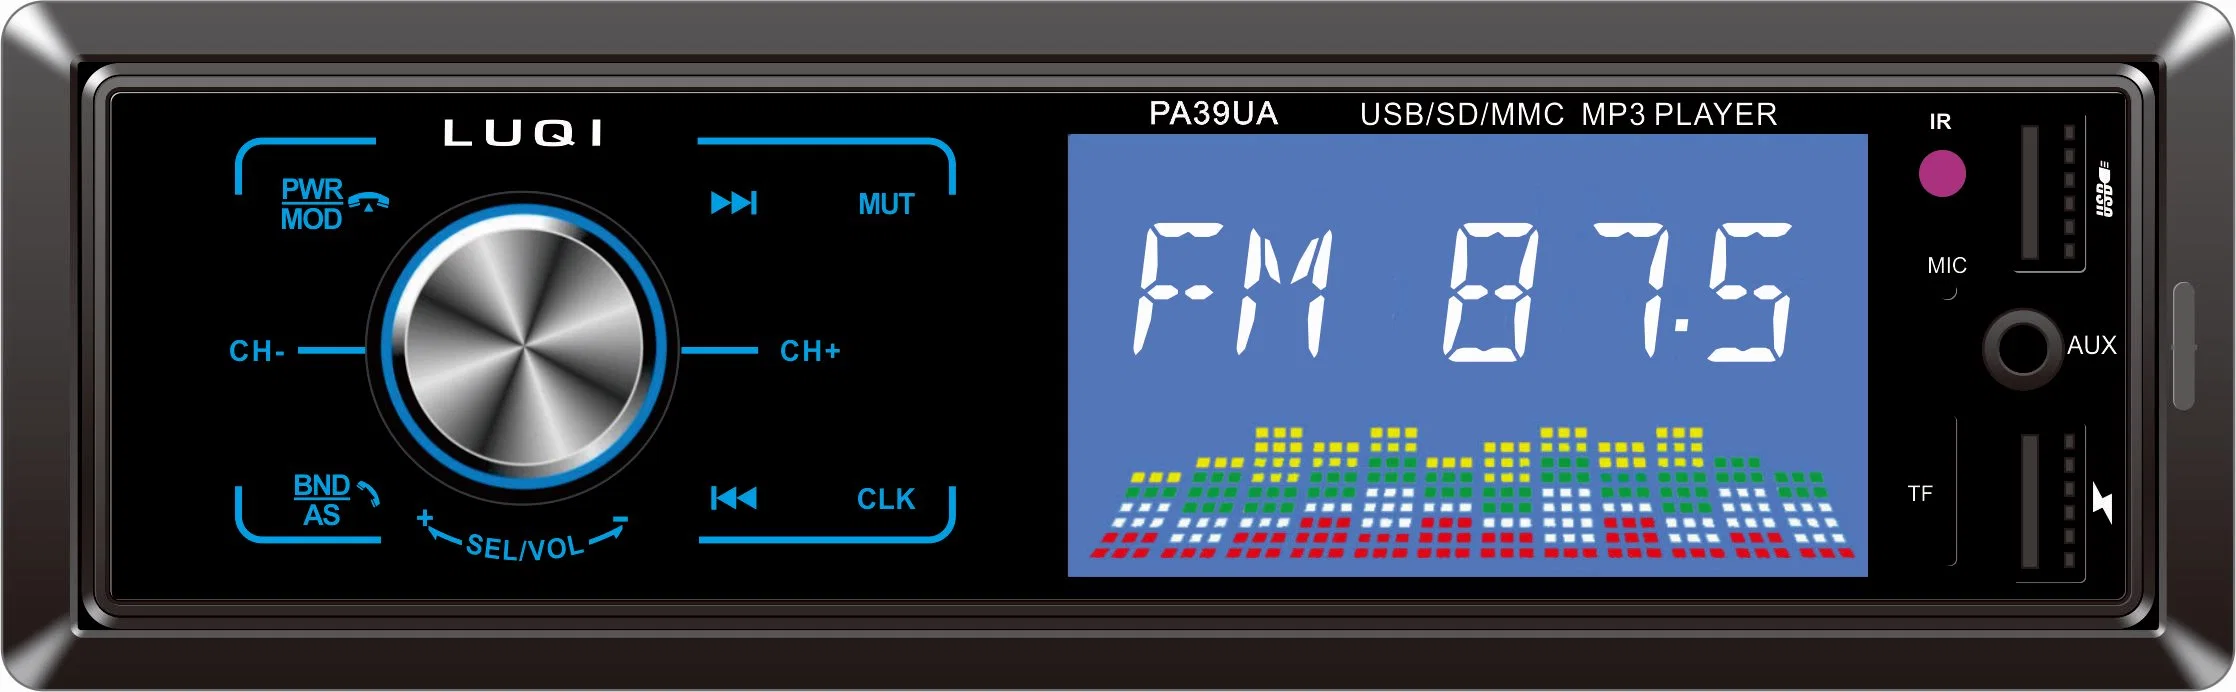 Бытовая электроника частной модели салонной стереосистемы MP3 плеер